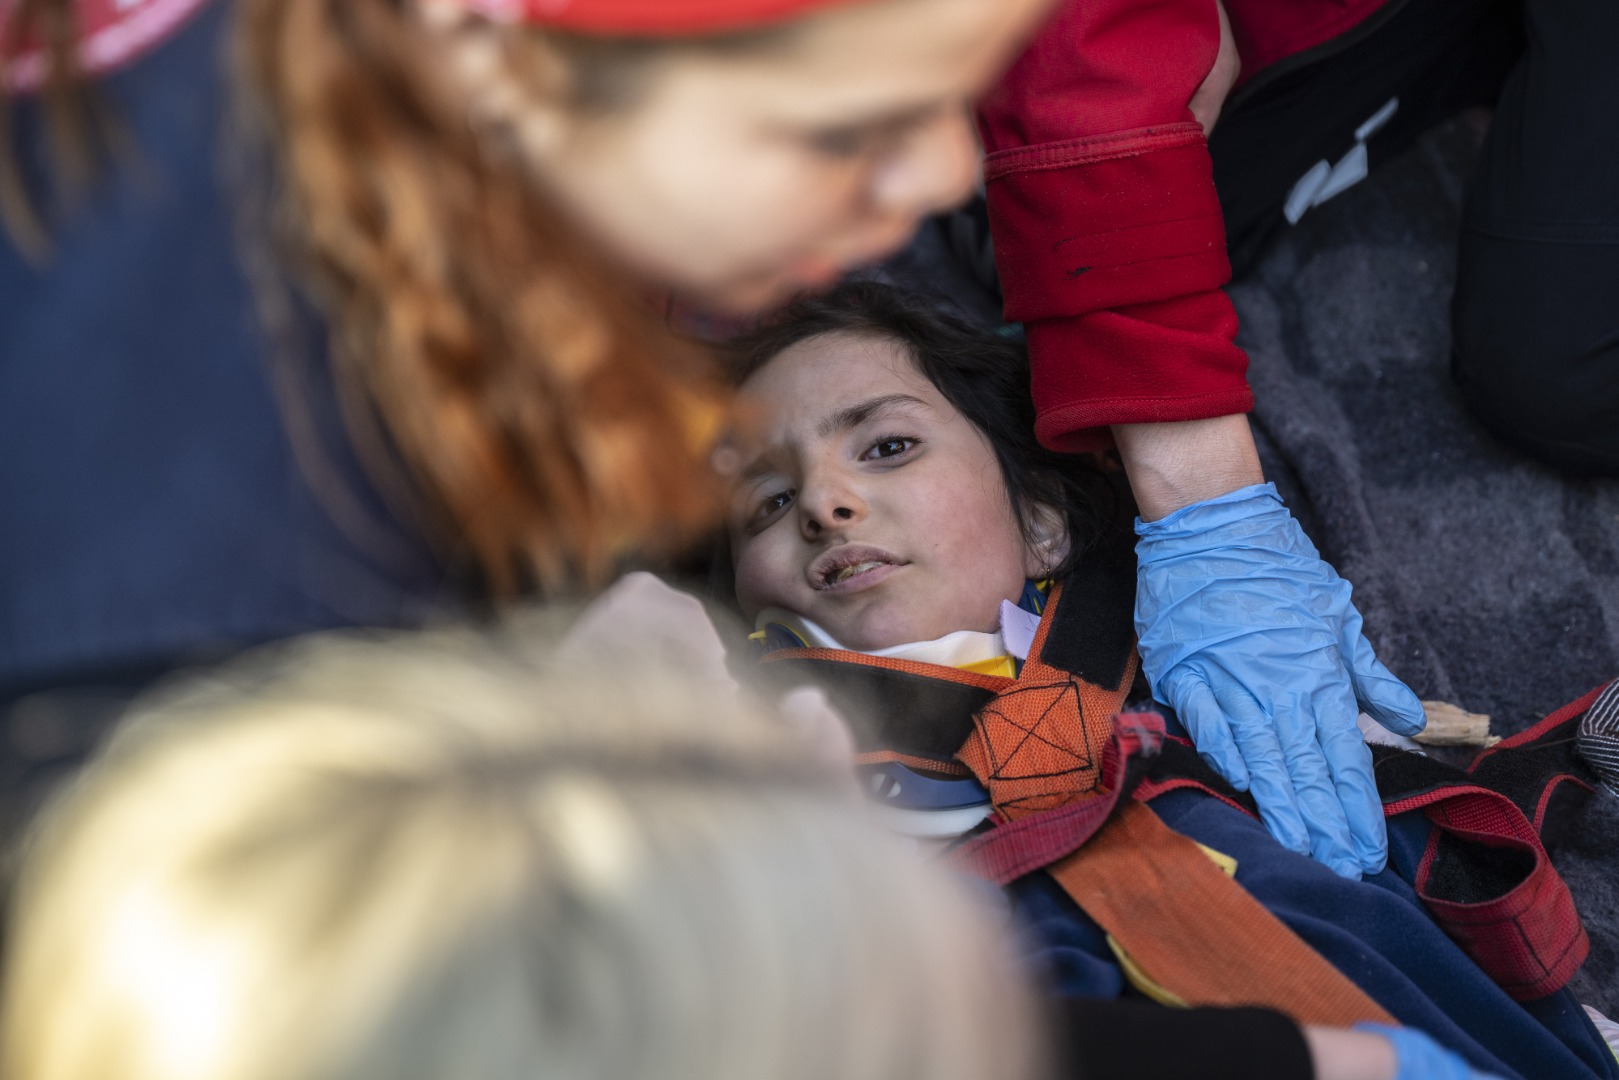 Depremzede vatandaş: Çocuklara sakinleşsinler diye ilaç veriyoruz 11